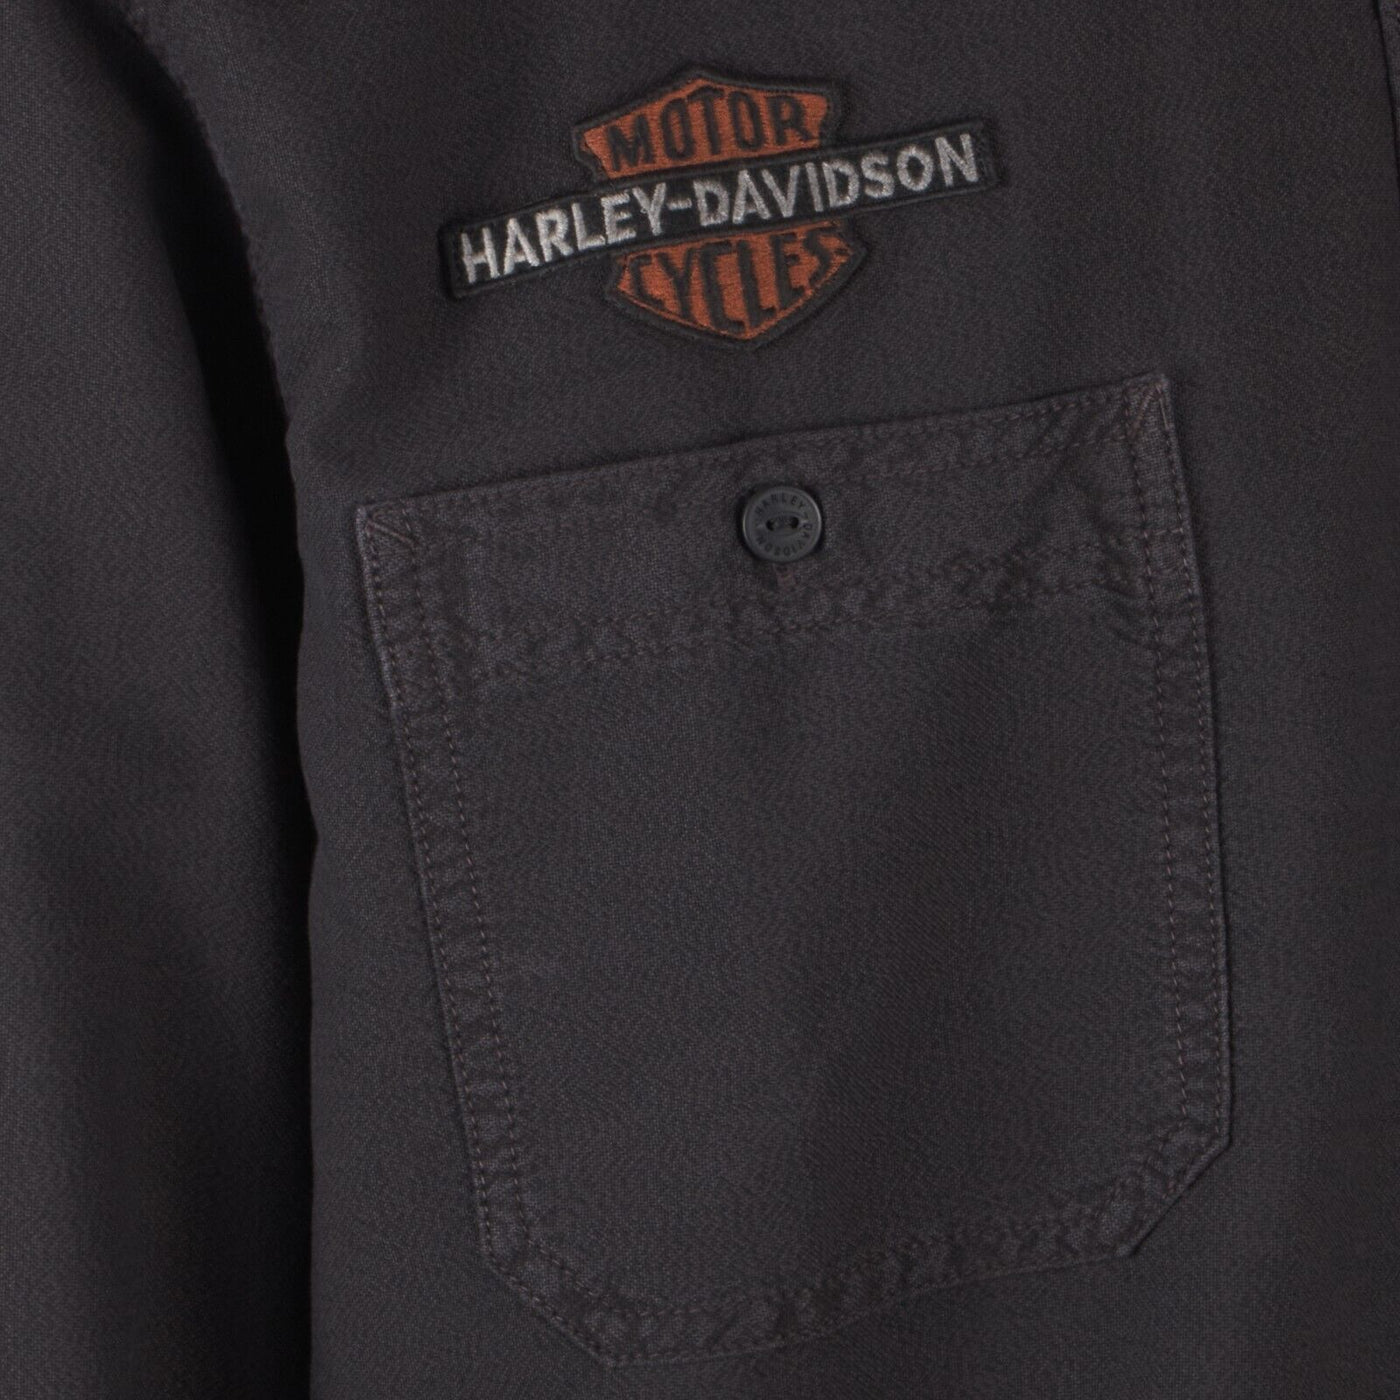 Harley-Davidson Men's Vintage Eagle Grey Eagle L/S Woven Shirt (S51)